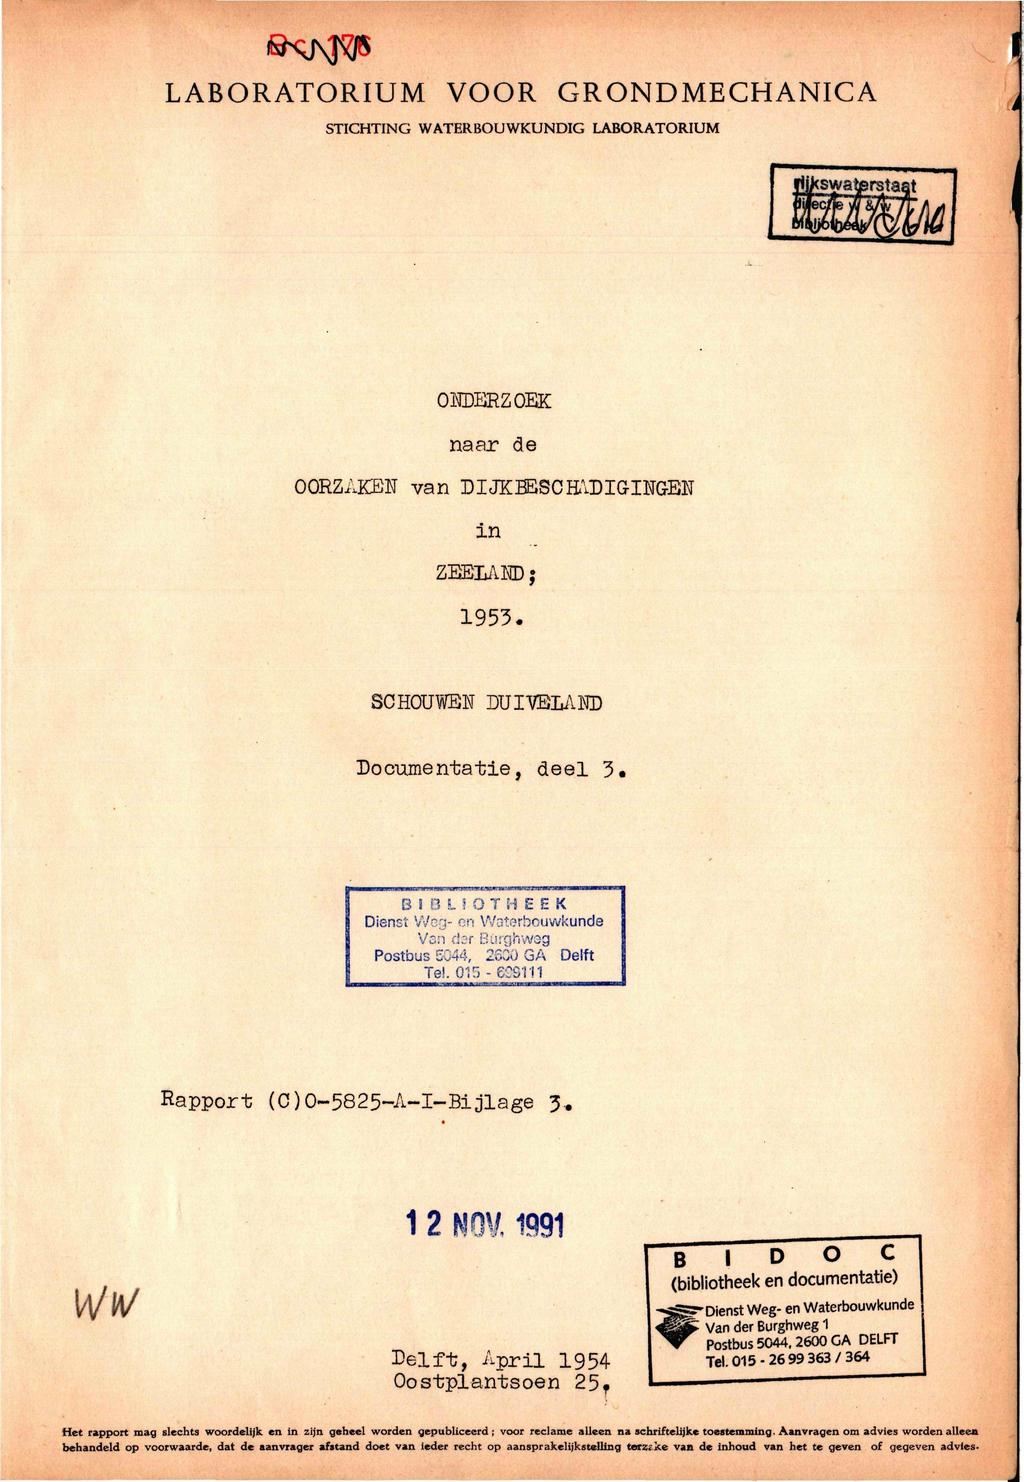 LABORATORIUM VOOR STICHTING WATERBOUWKUNDIG LABORATORIUM GRONDMECHANICA ONDERZOEK naar de OORZAKEN van DIJKBESCH\DIGINGEN in ZEELAND j 1953. SCHOUWEN DUIVBLAND Documentatie, deel 3. B I 0 L!